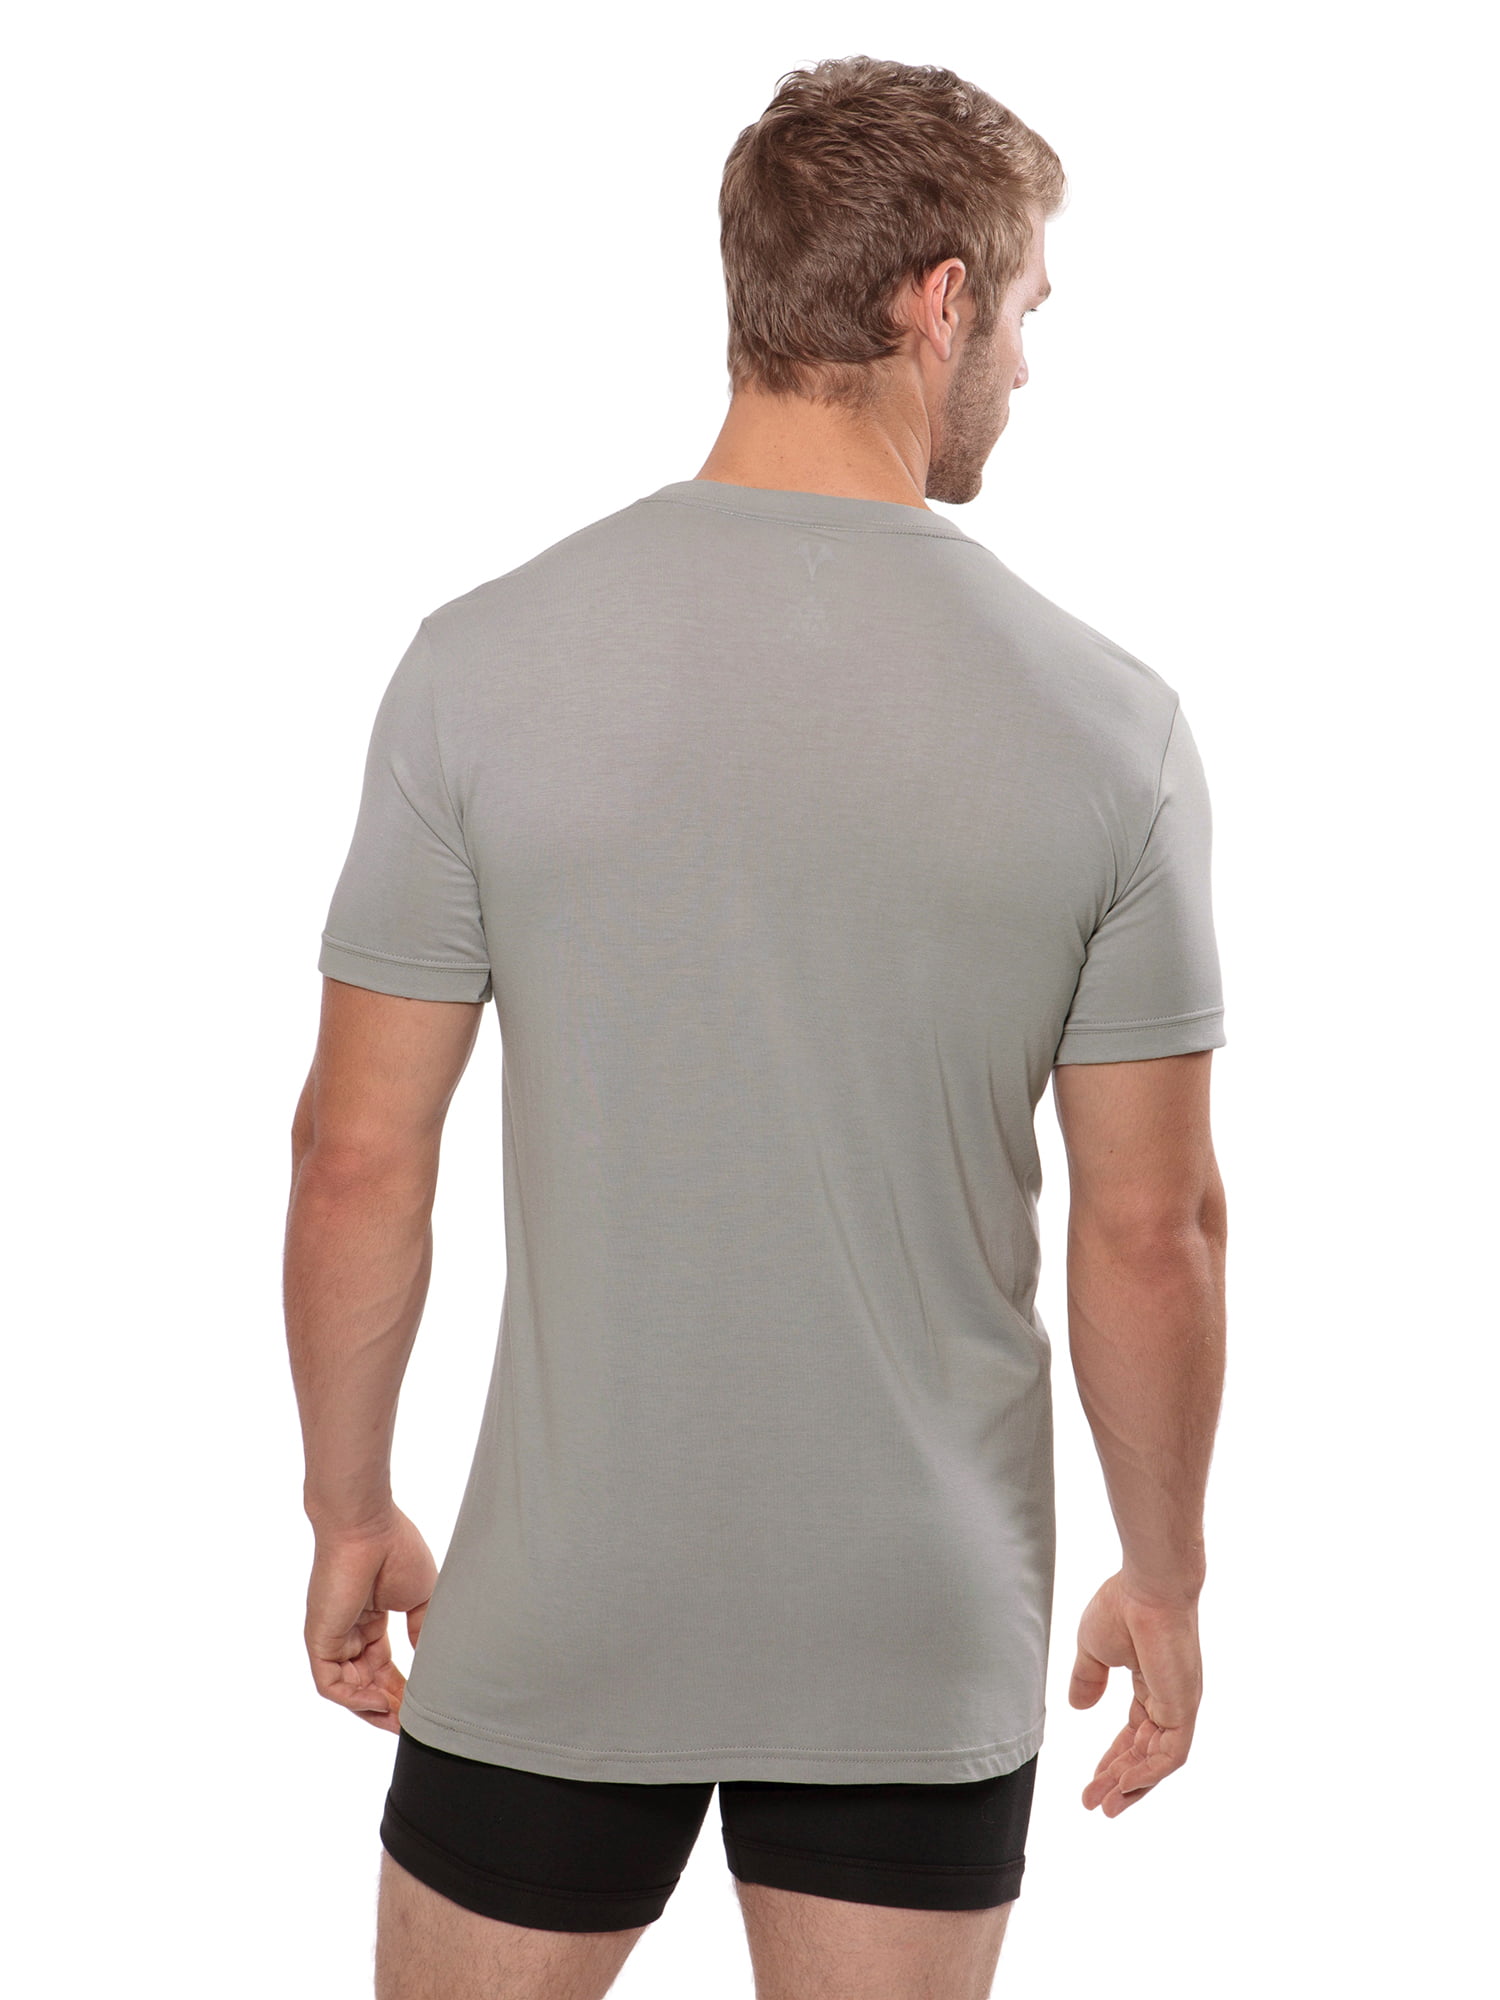 Dexx Texere Crew Neck Undershirt for Men Luxury Shirt in Bamboo Viscose MB6001